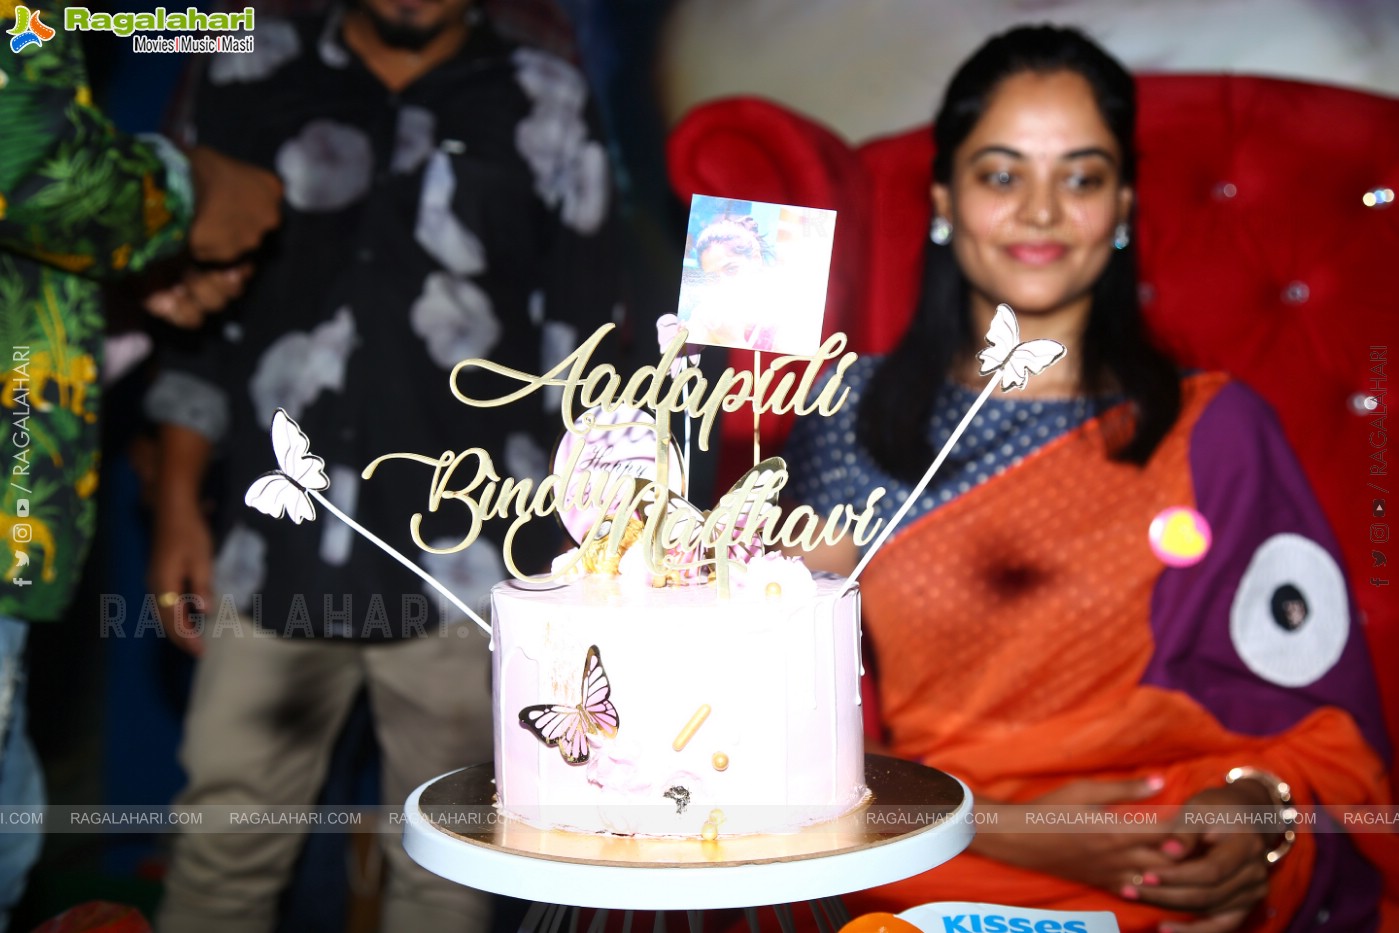 Bigg Boss Telugu Winner Bindu Madhavi Birthday Celebrations at Red Lion